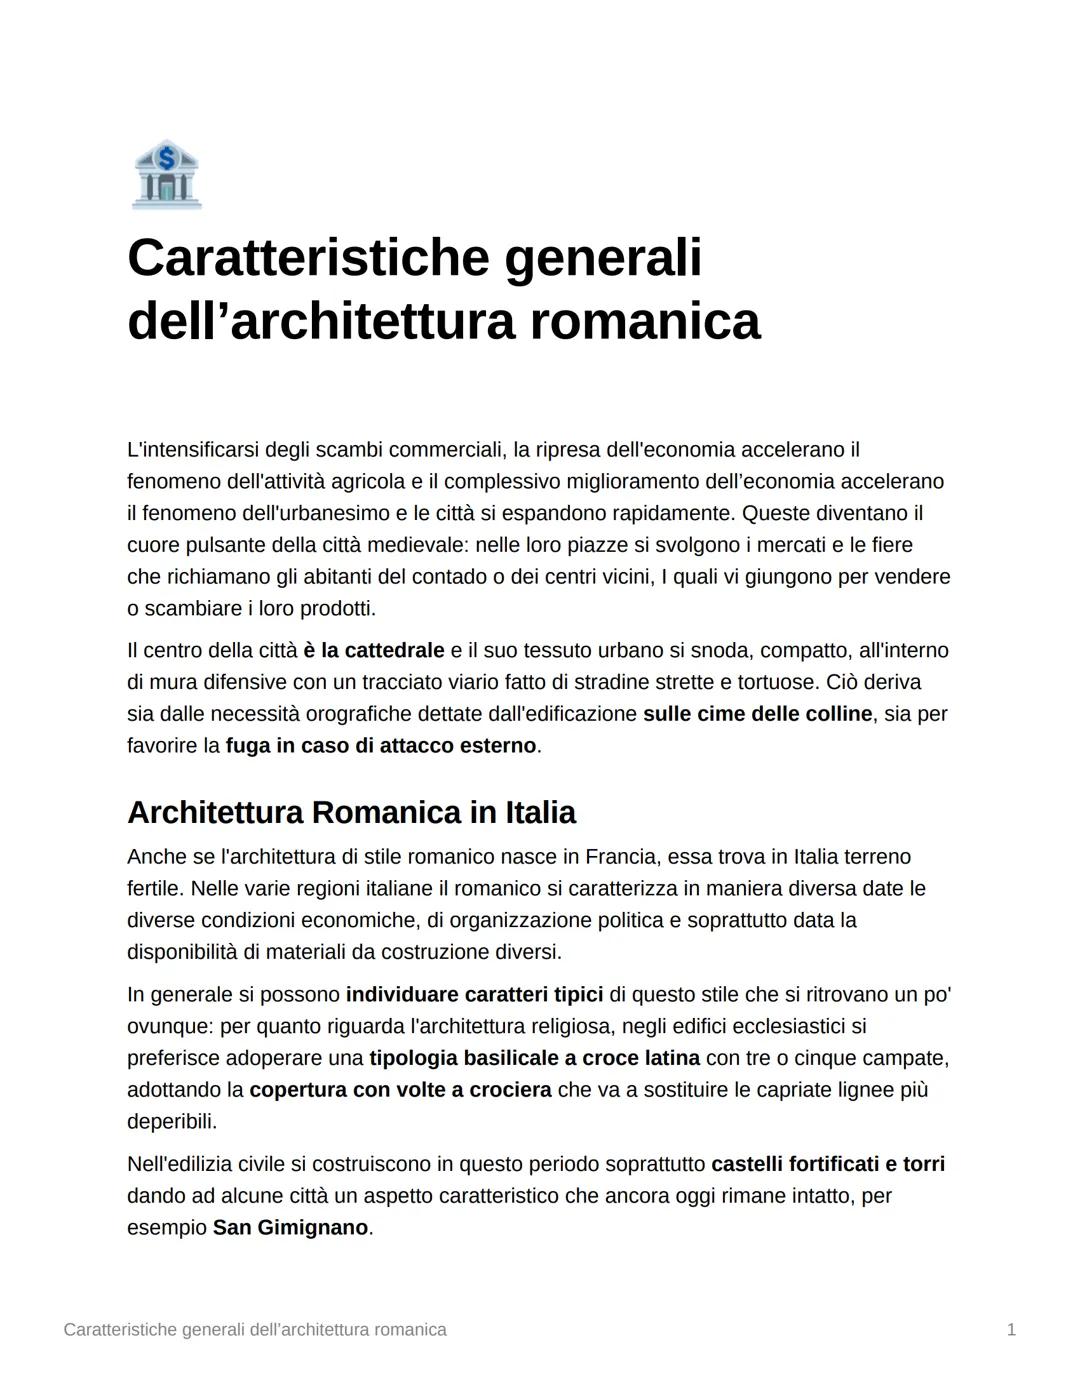 INI
Caratteristiche generali
dell'architettura romanica
L'intensificarsi degli scambi commerciali, la ripresa dell'economia accelerano il
fe